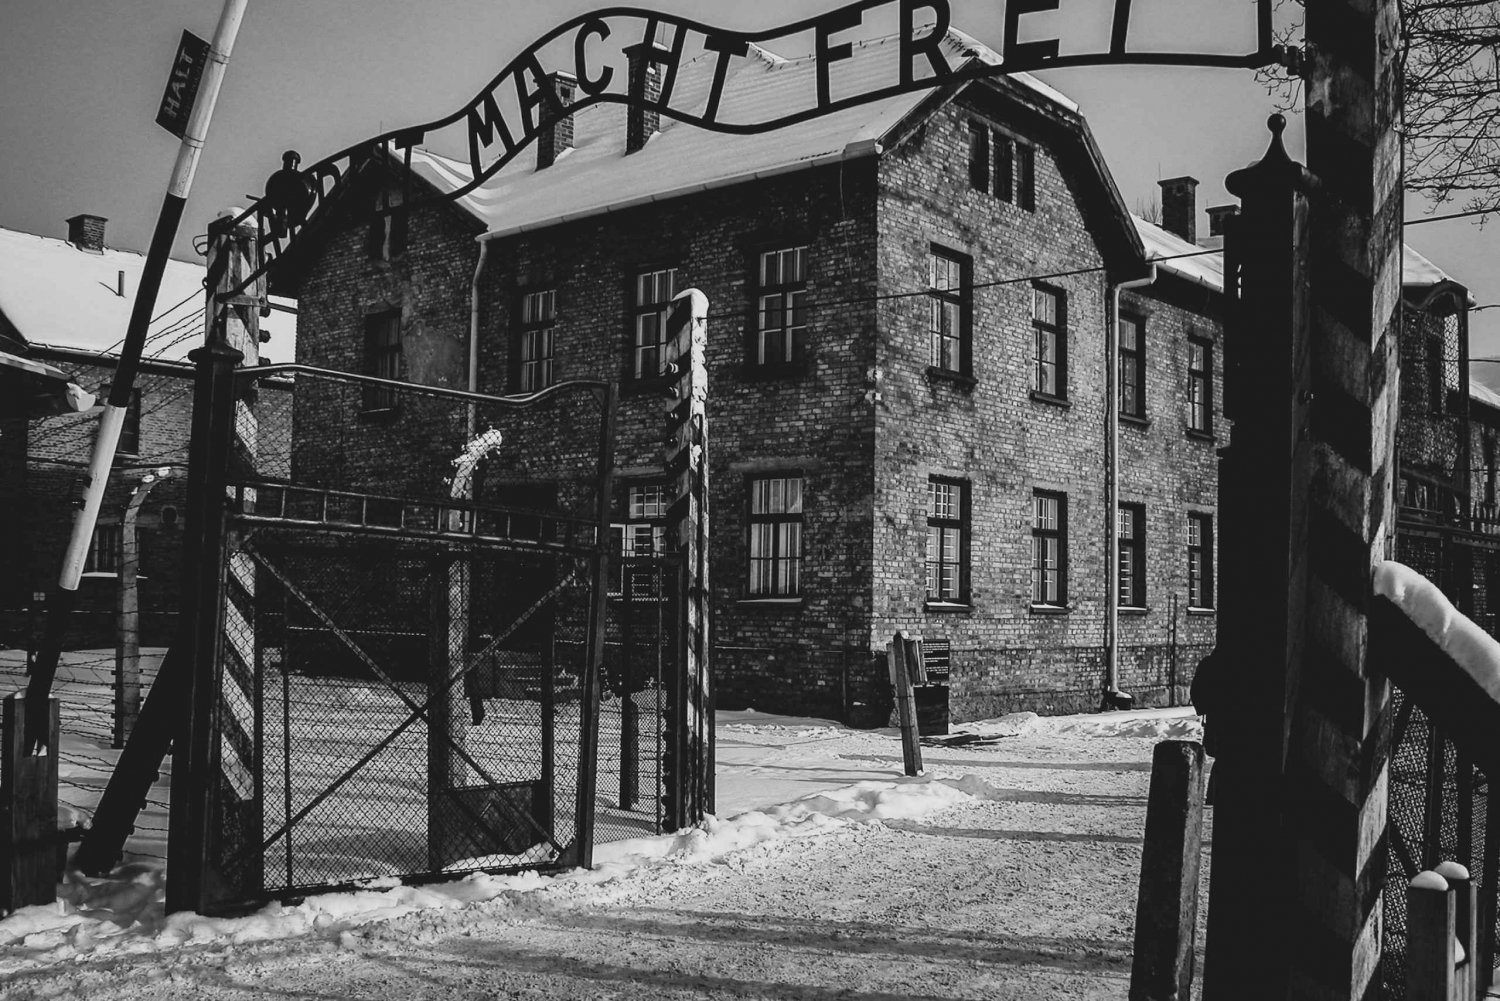 De Cracóvia: Auschwitz Birkenau Tour guiado por você mesmo